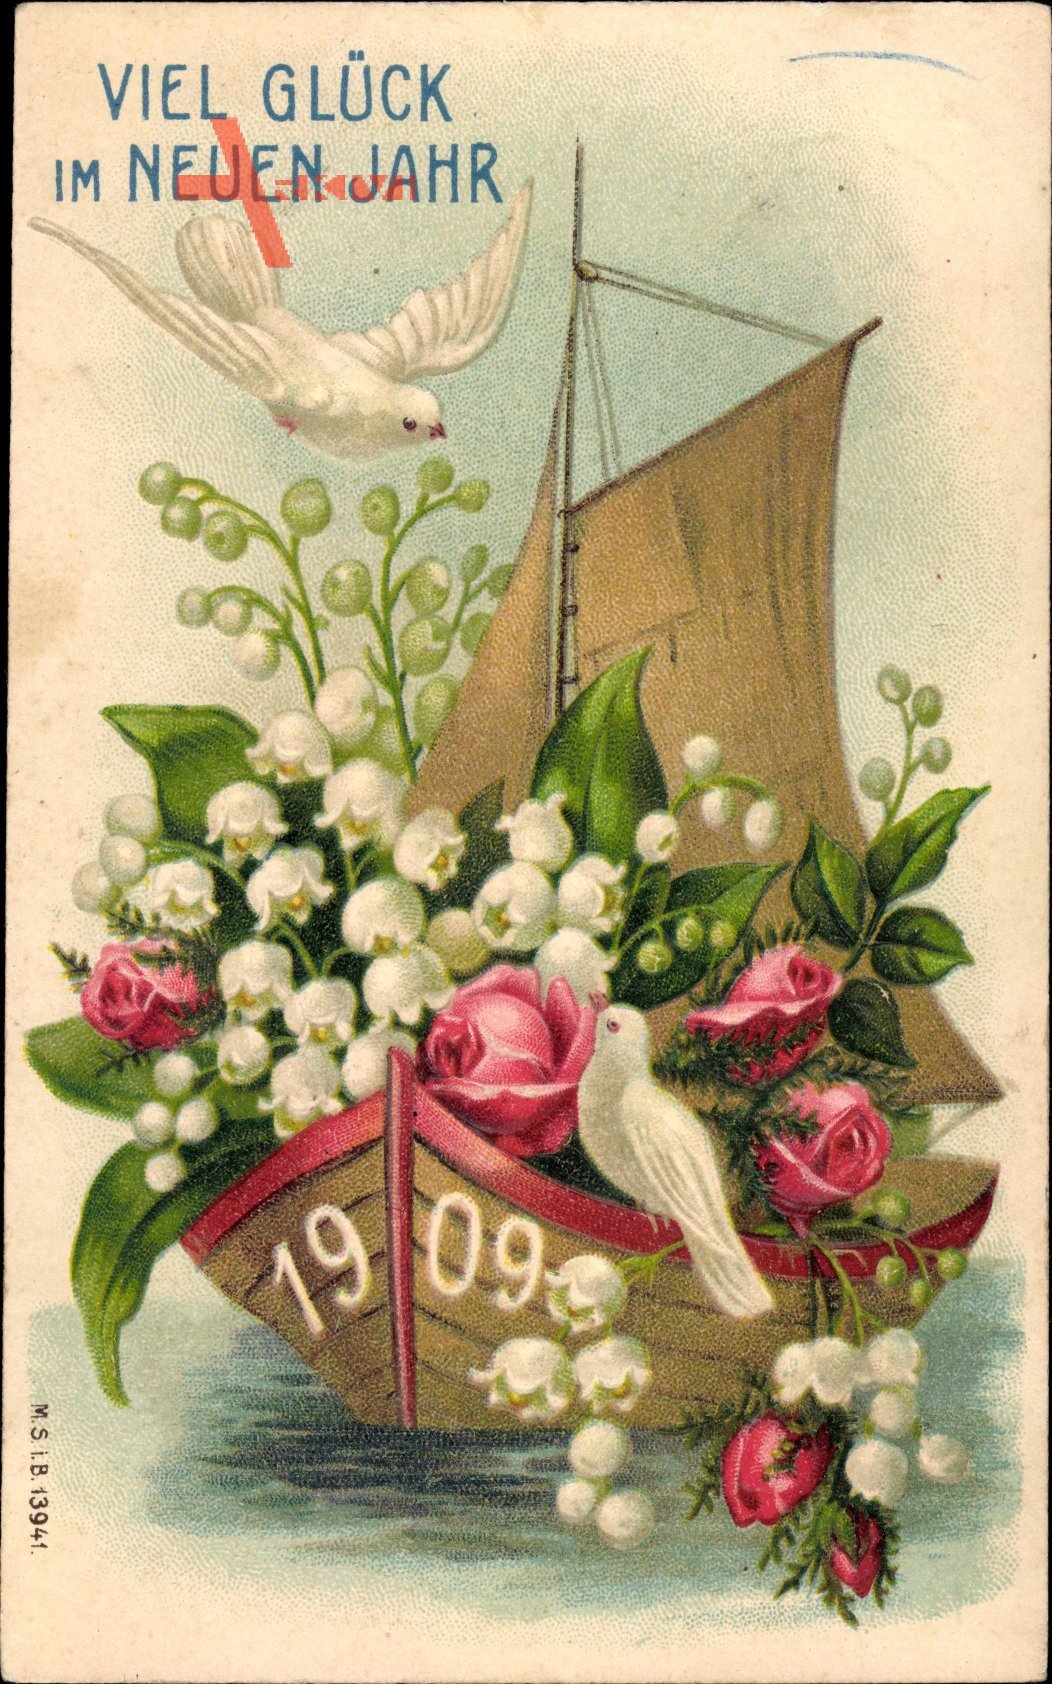 Glückwunsch Neujahr, Weiße Tauben, Blumen, Jahreszahl 1909